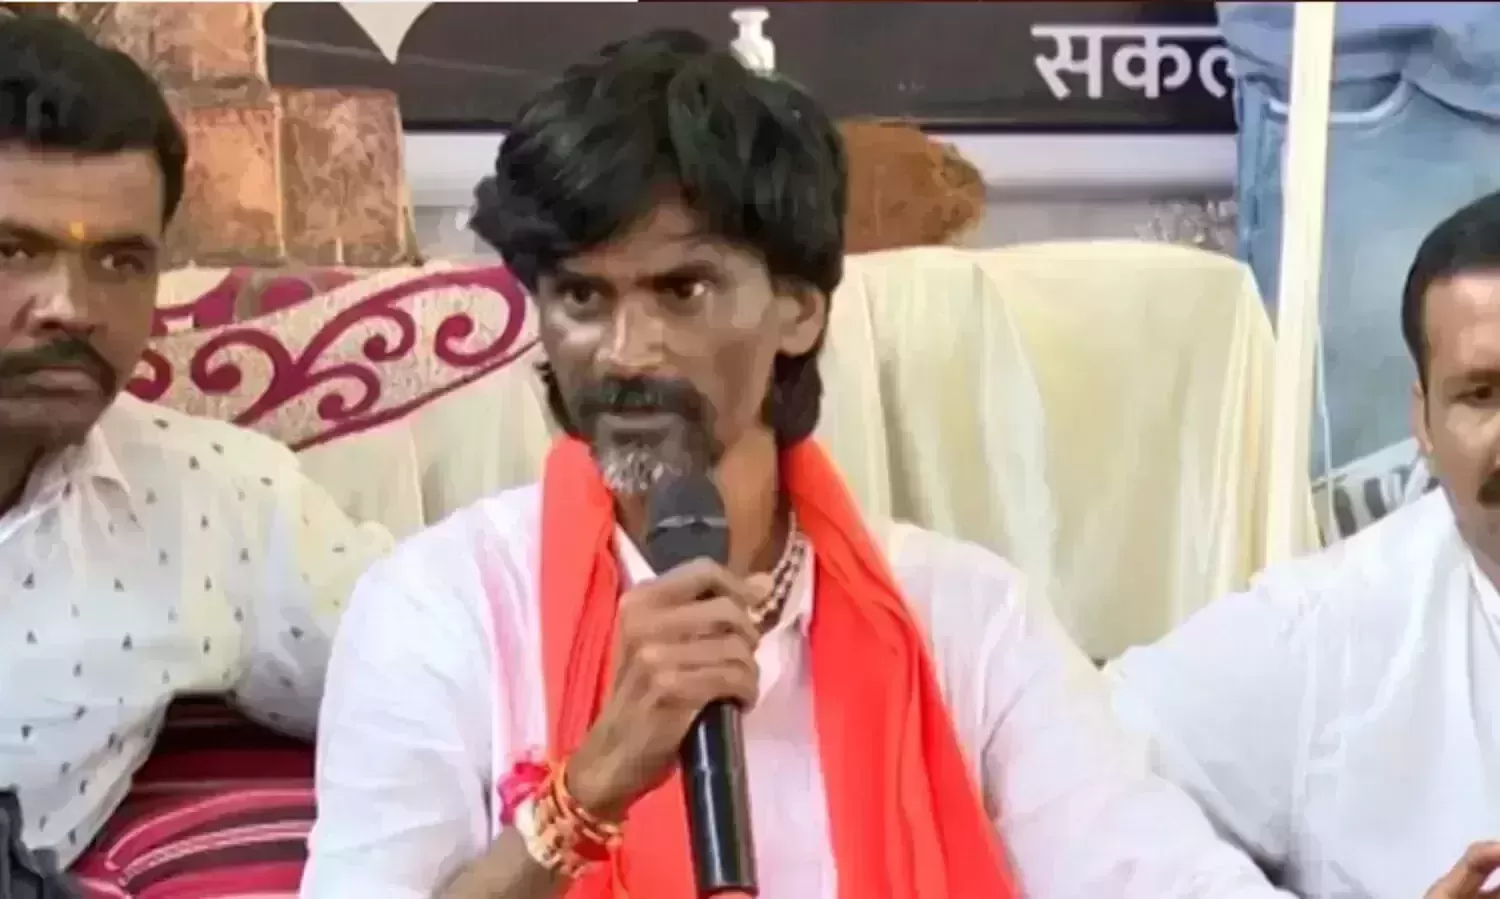 Maha govt betrayed Marathas on reservation bill: protest leader